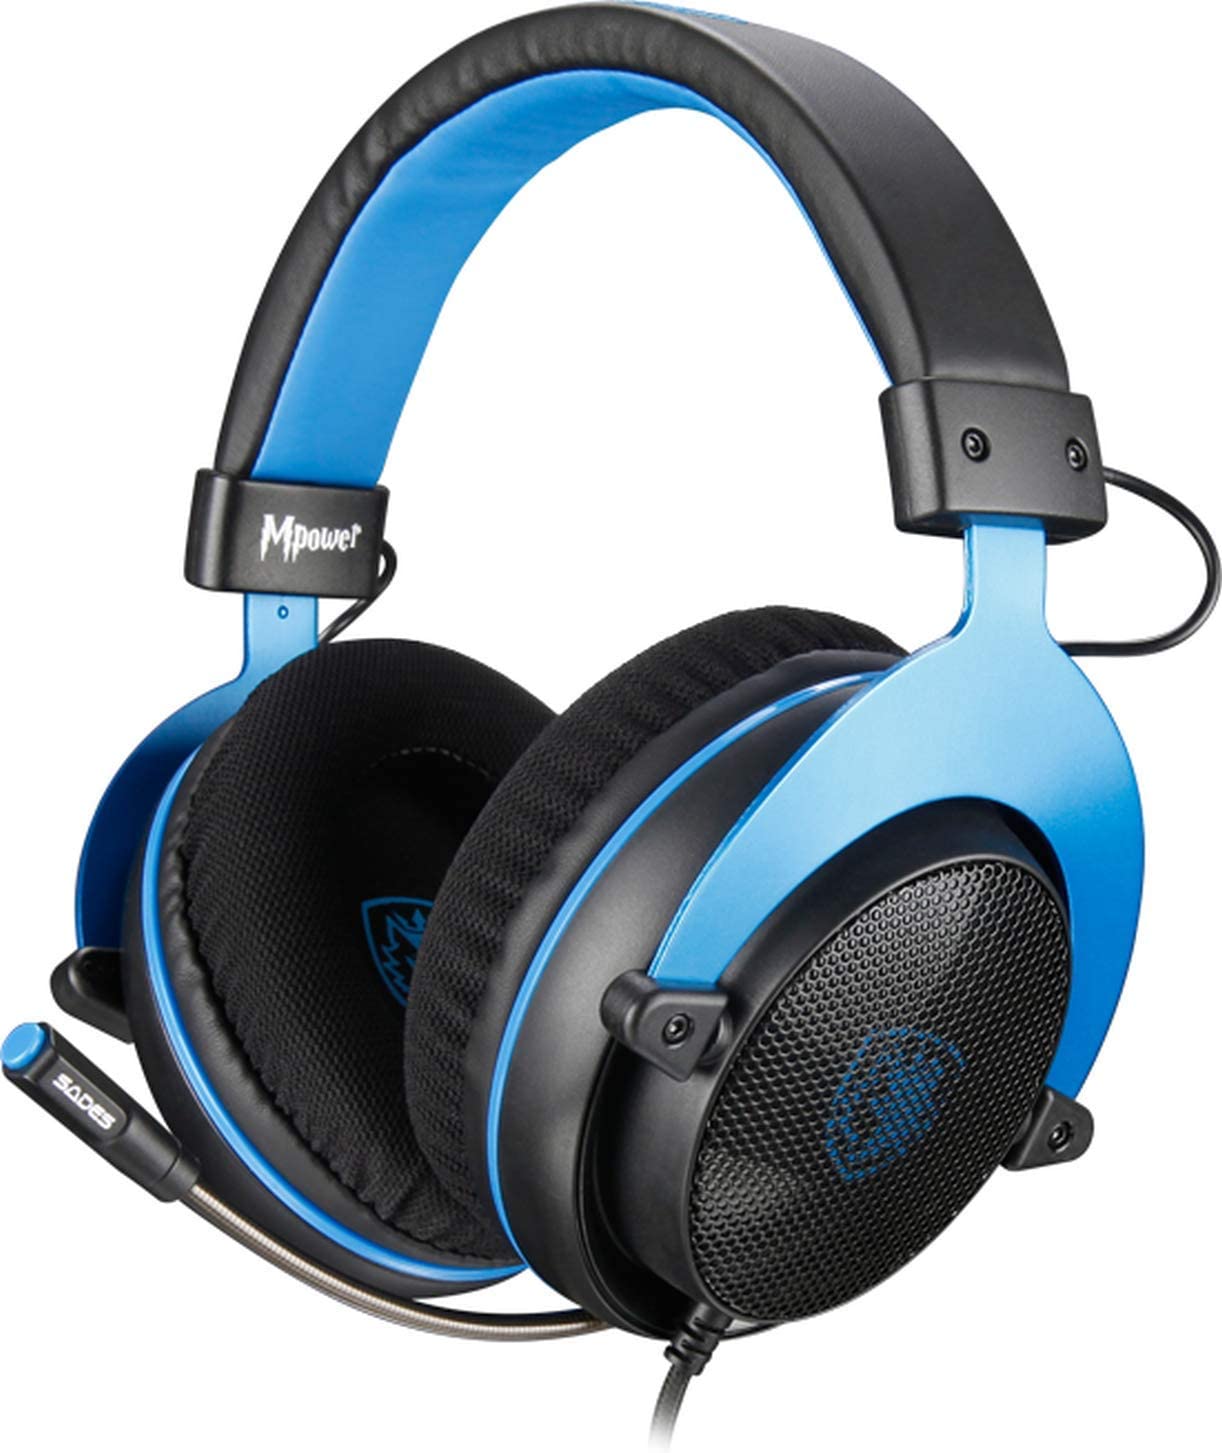 SADES MPOWER Gaming Headset -SA-723 Blue